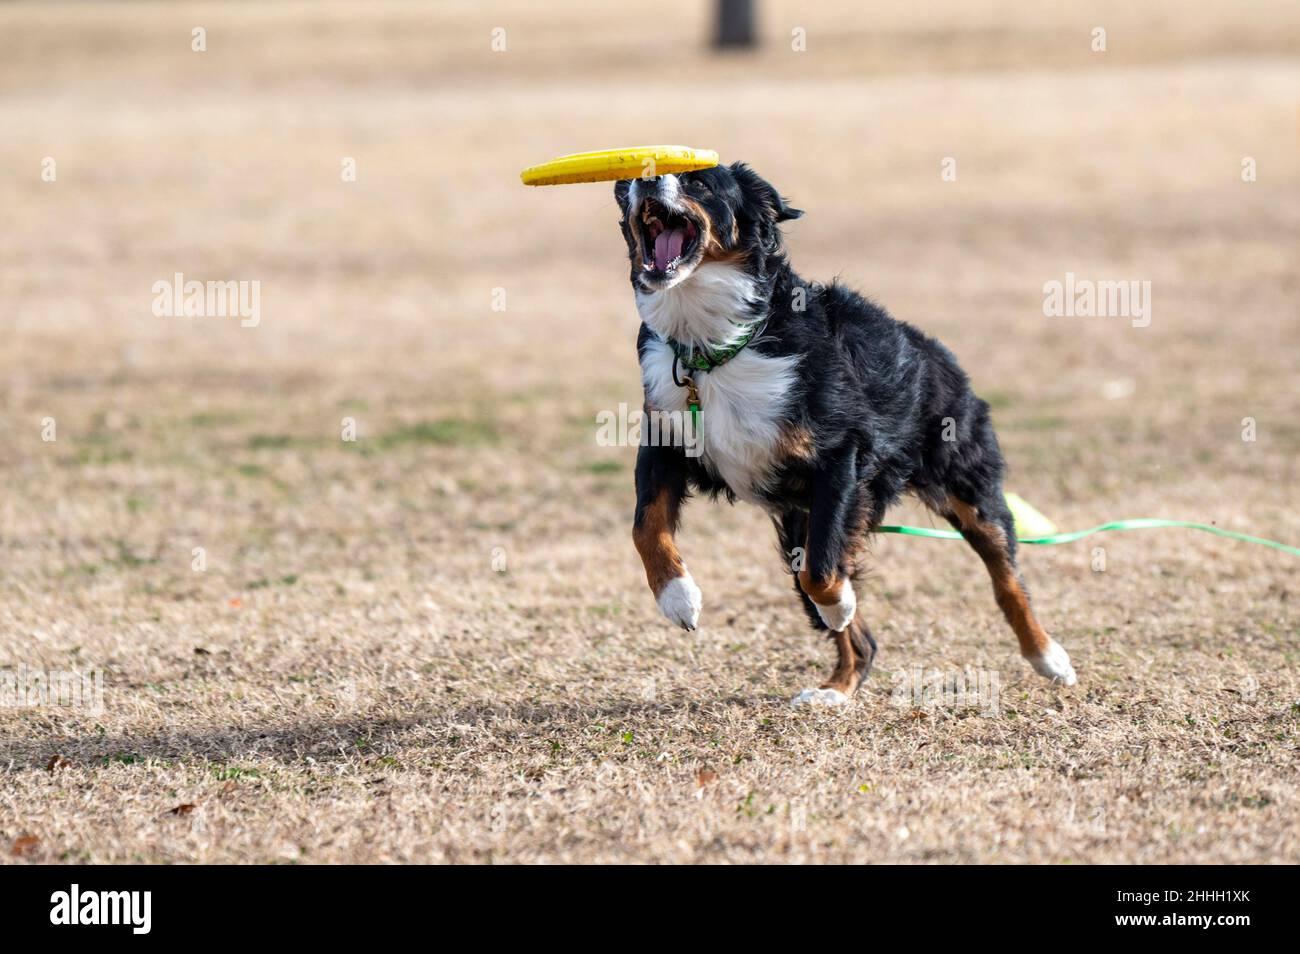 Dreifarbiger australischer Schäferhund, der im Park eine gelbe Scheibe fängt Stockfoto